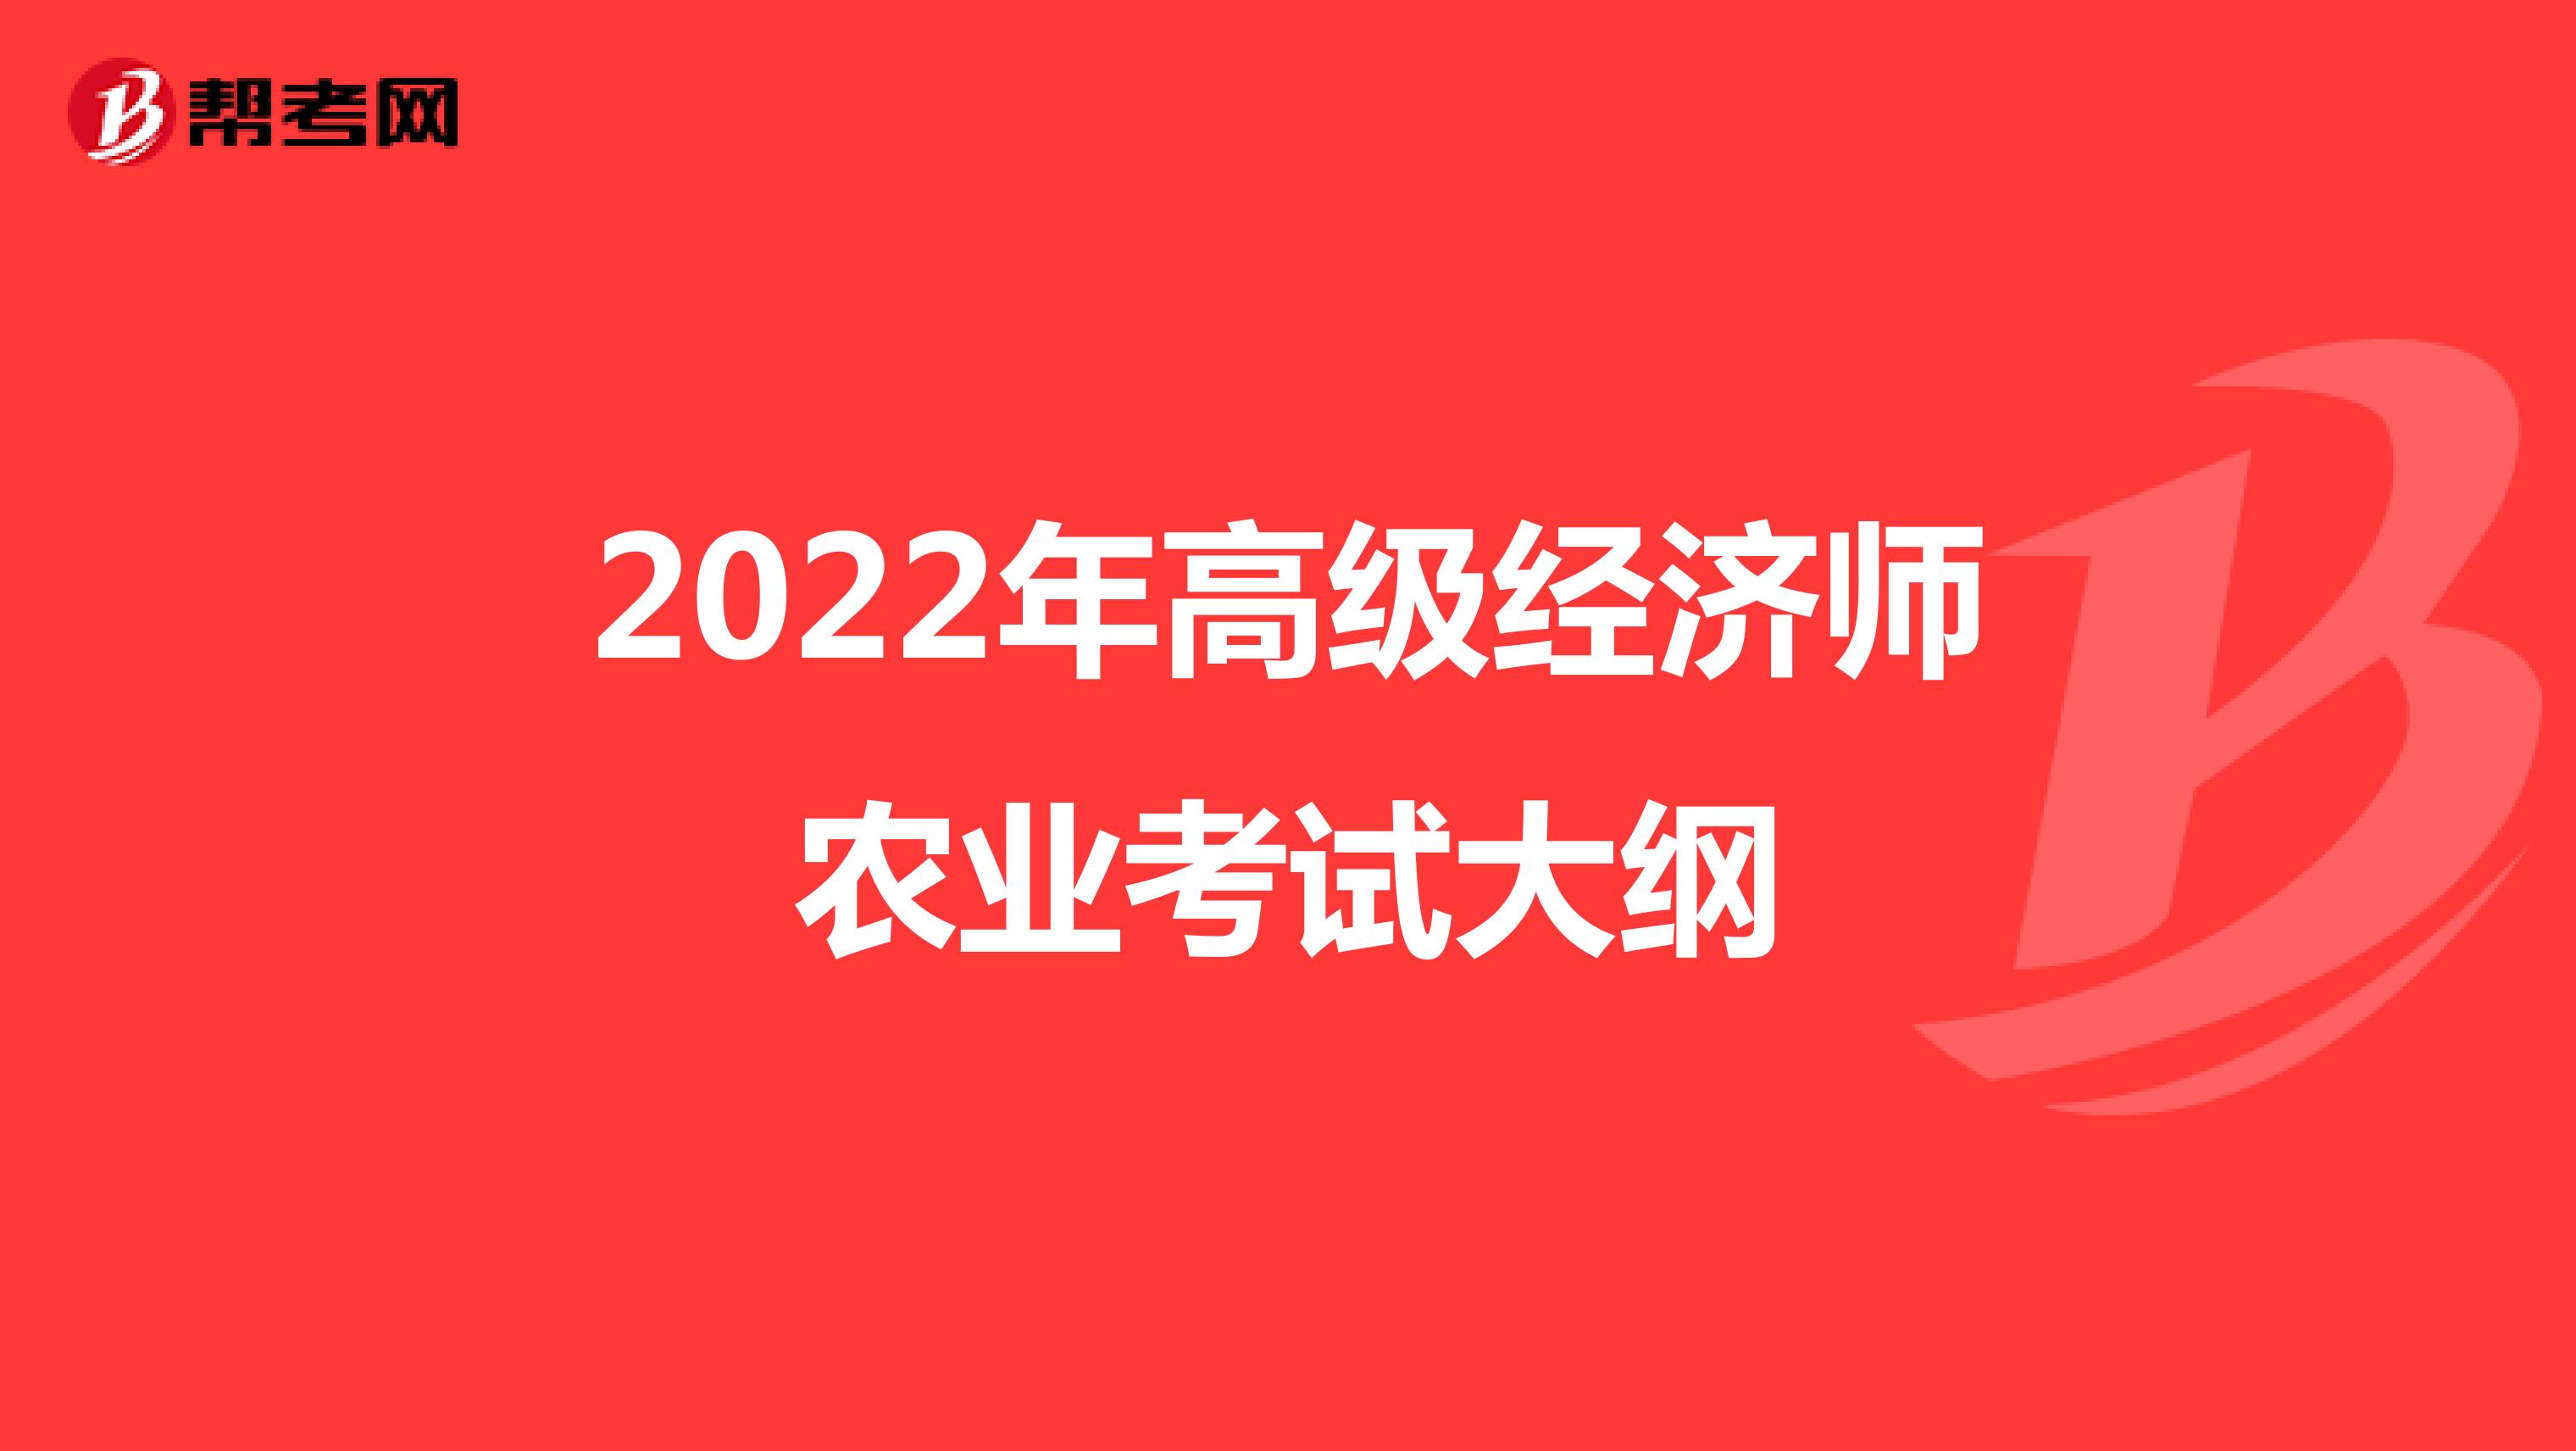  2022年高级经济师农业考试大纲